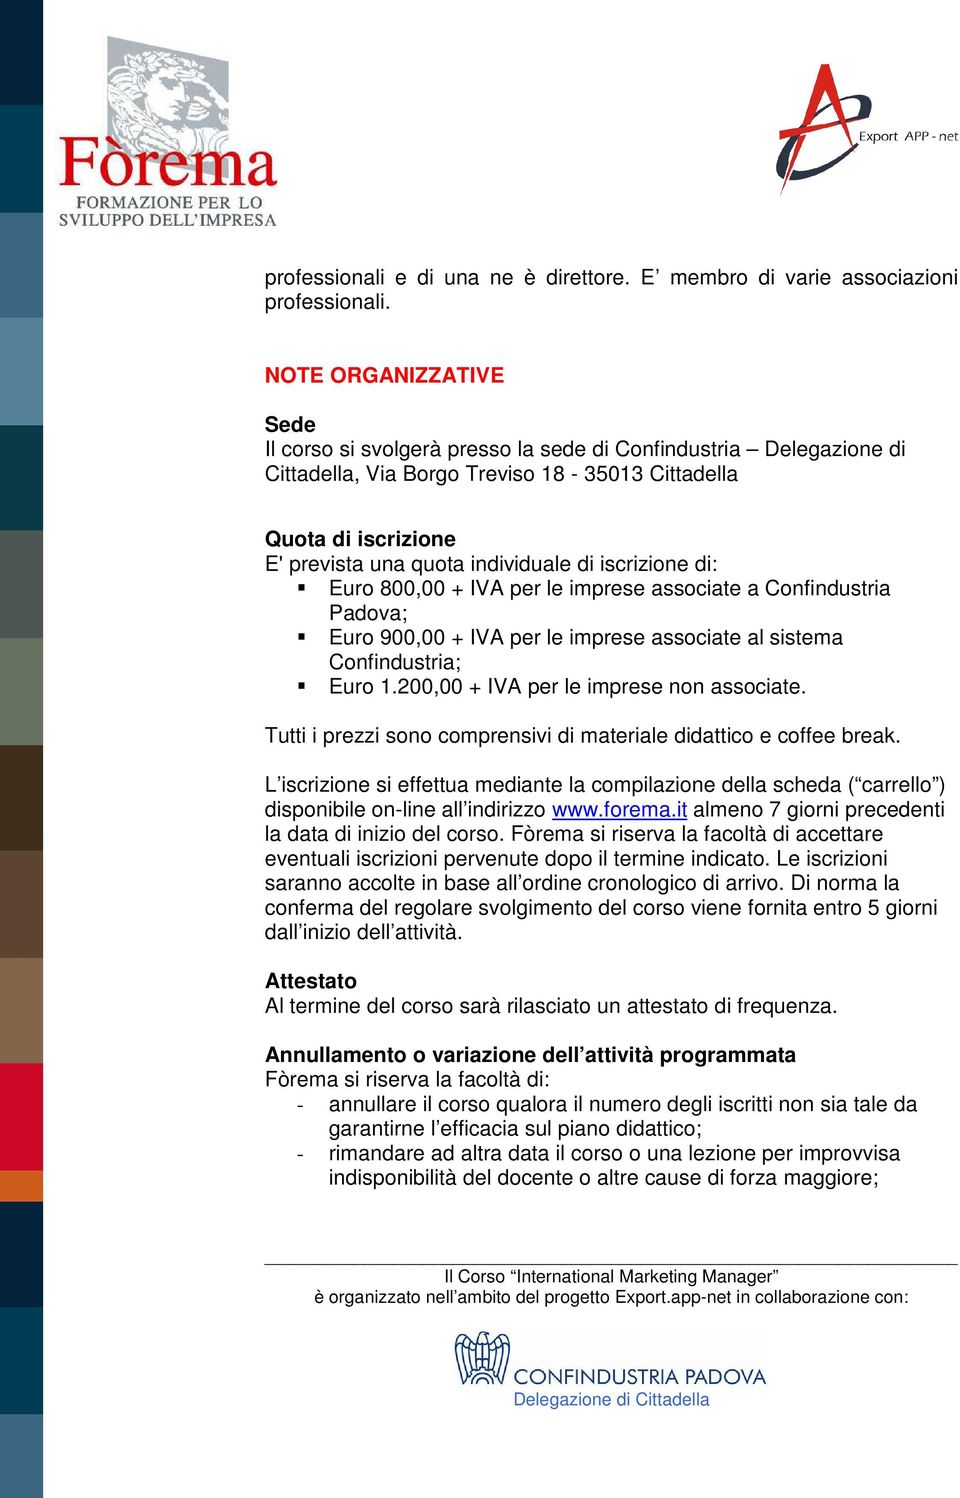 iscrizione di: Euro 800,00 + IVA per le imprese associate a Confindustria Padova; Euro 900,00 + IVA per le imprese associate al sistema Confindustria; Euro 1.200,00 + IVA per le imprese non associate.